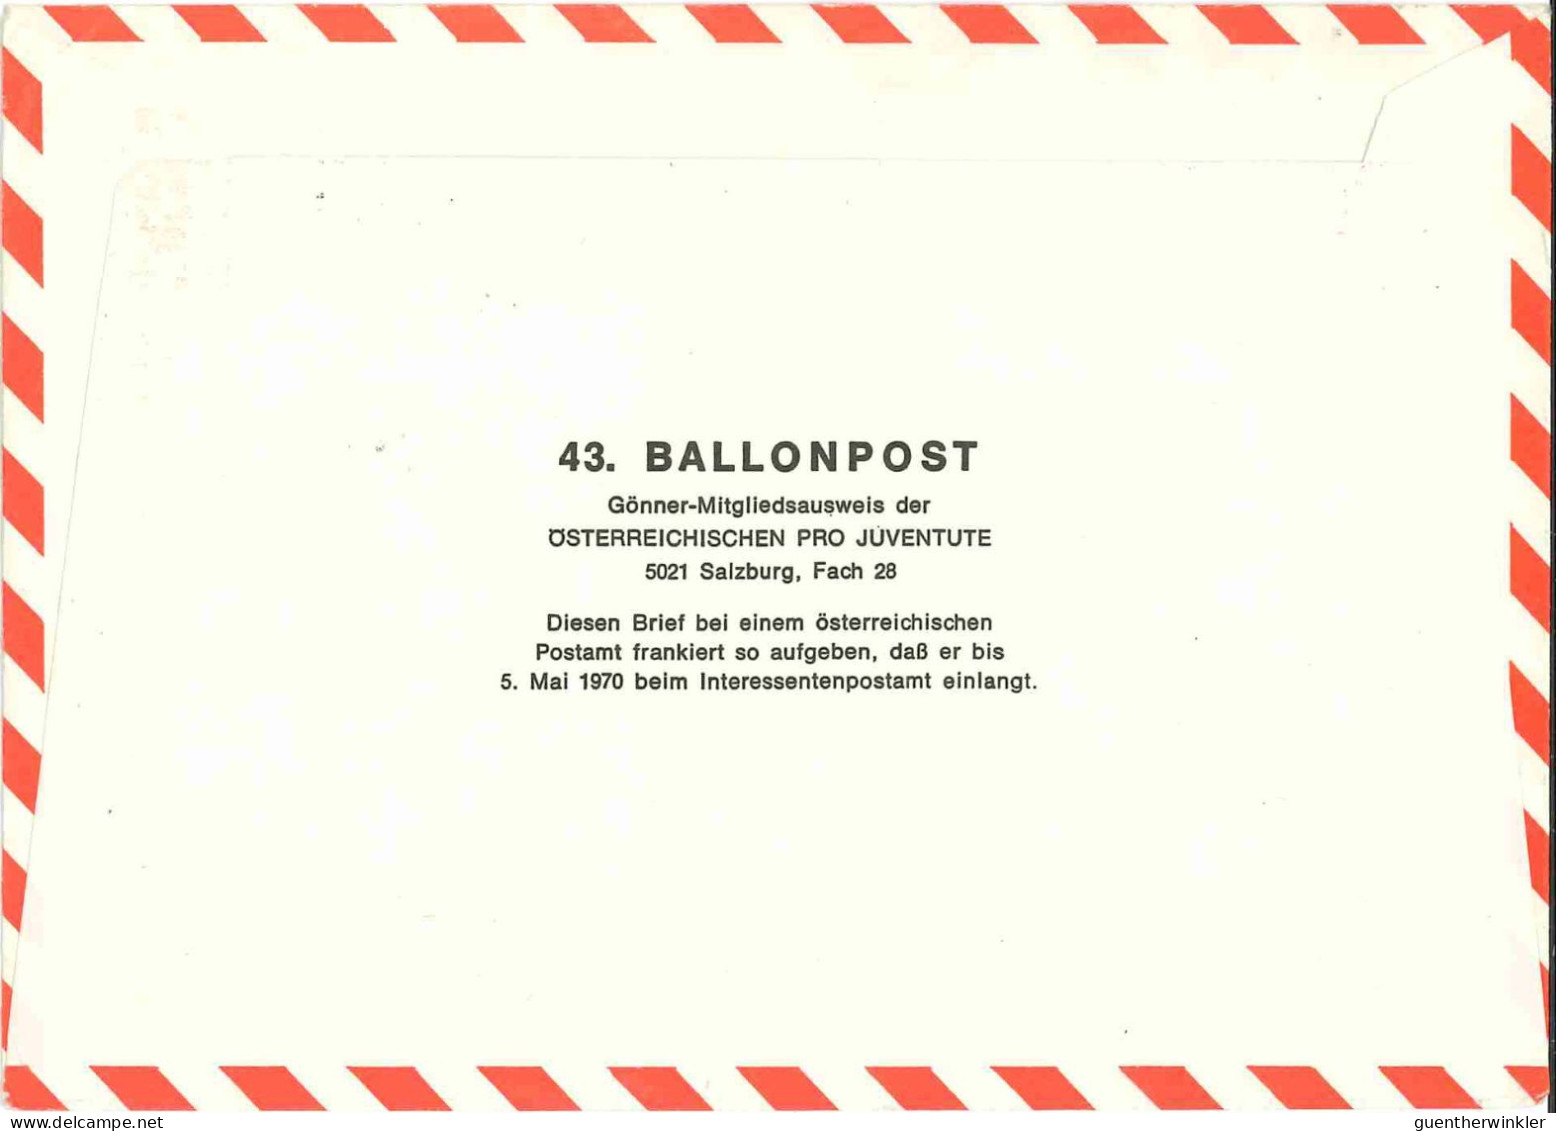 Regulärer Ballonpostflug Nr. 43a Der Pro Juventute [RBP43.] - Ballonpost